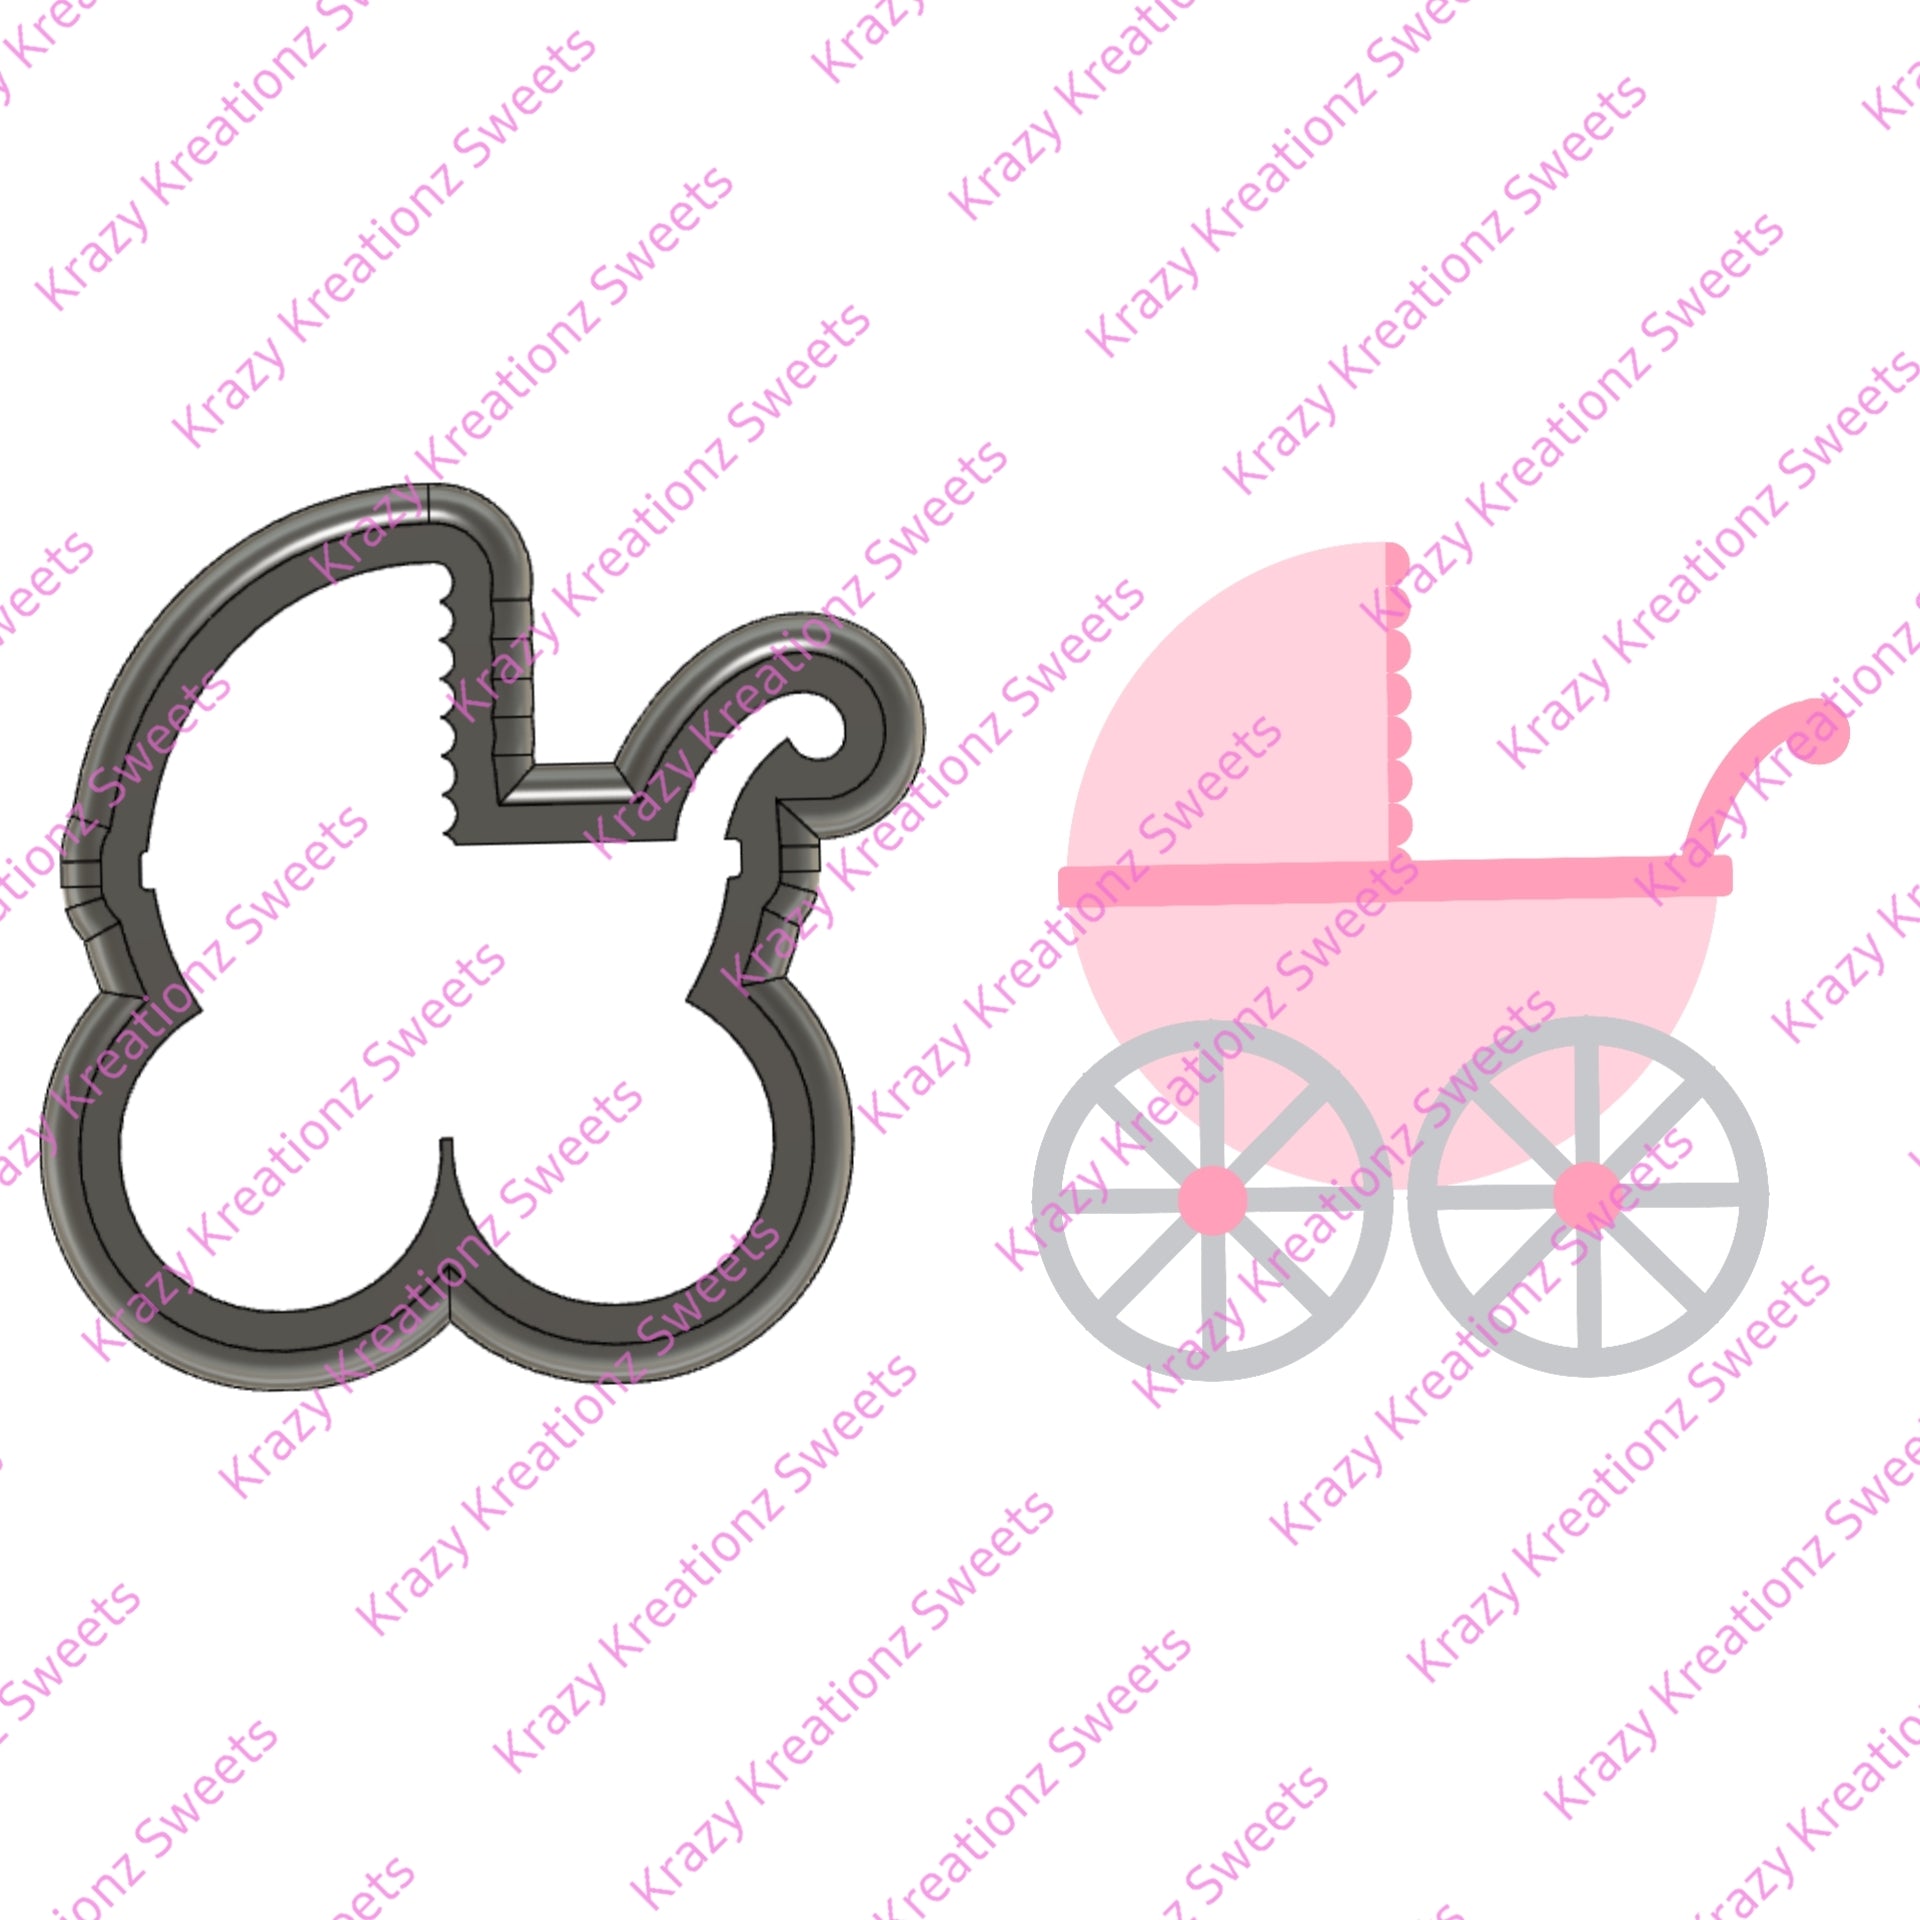 Baby Stroller Cookie Cutter